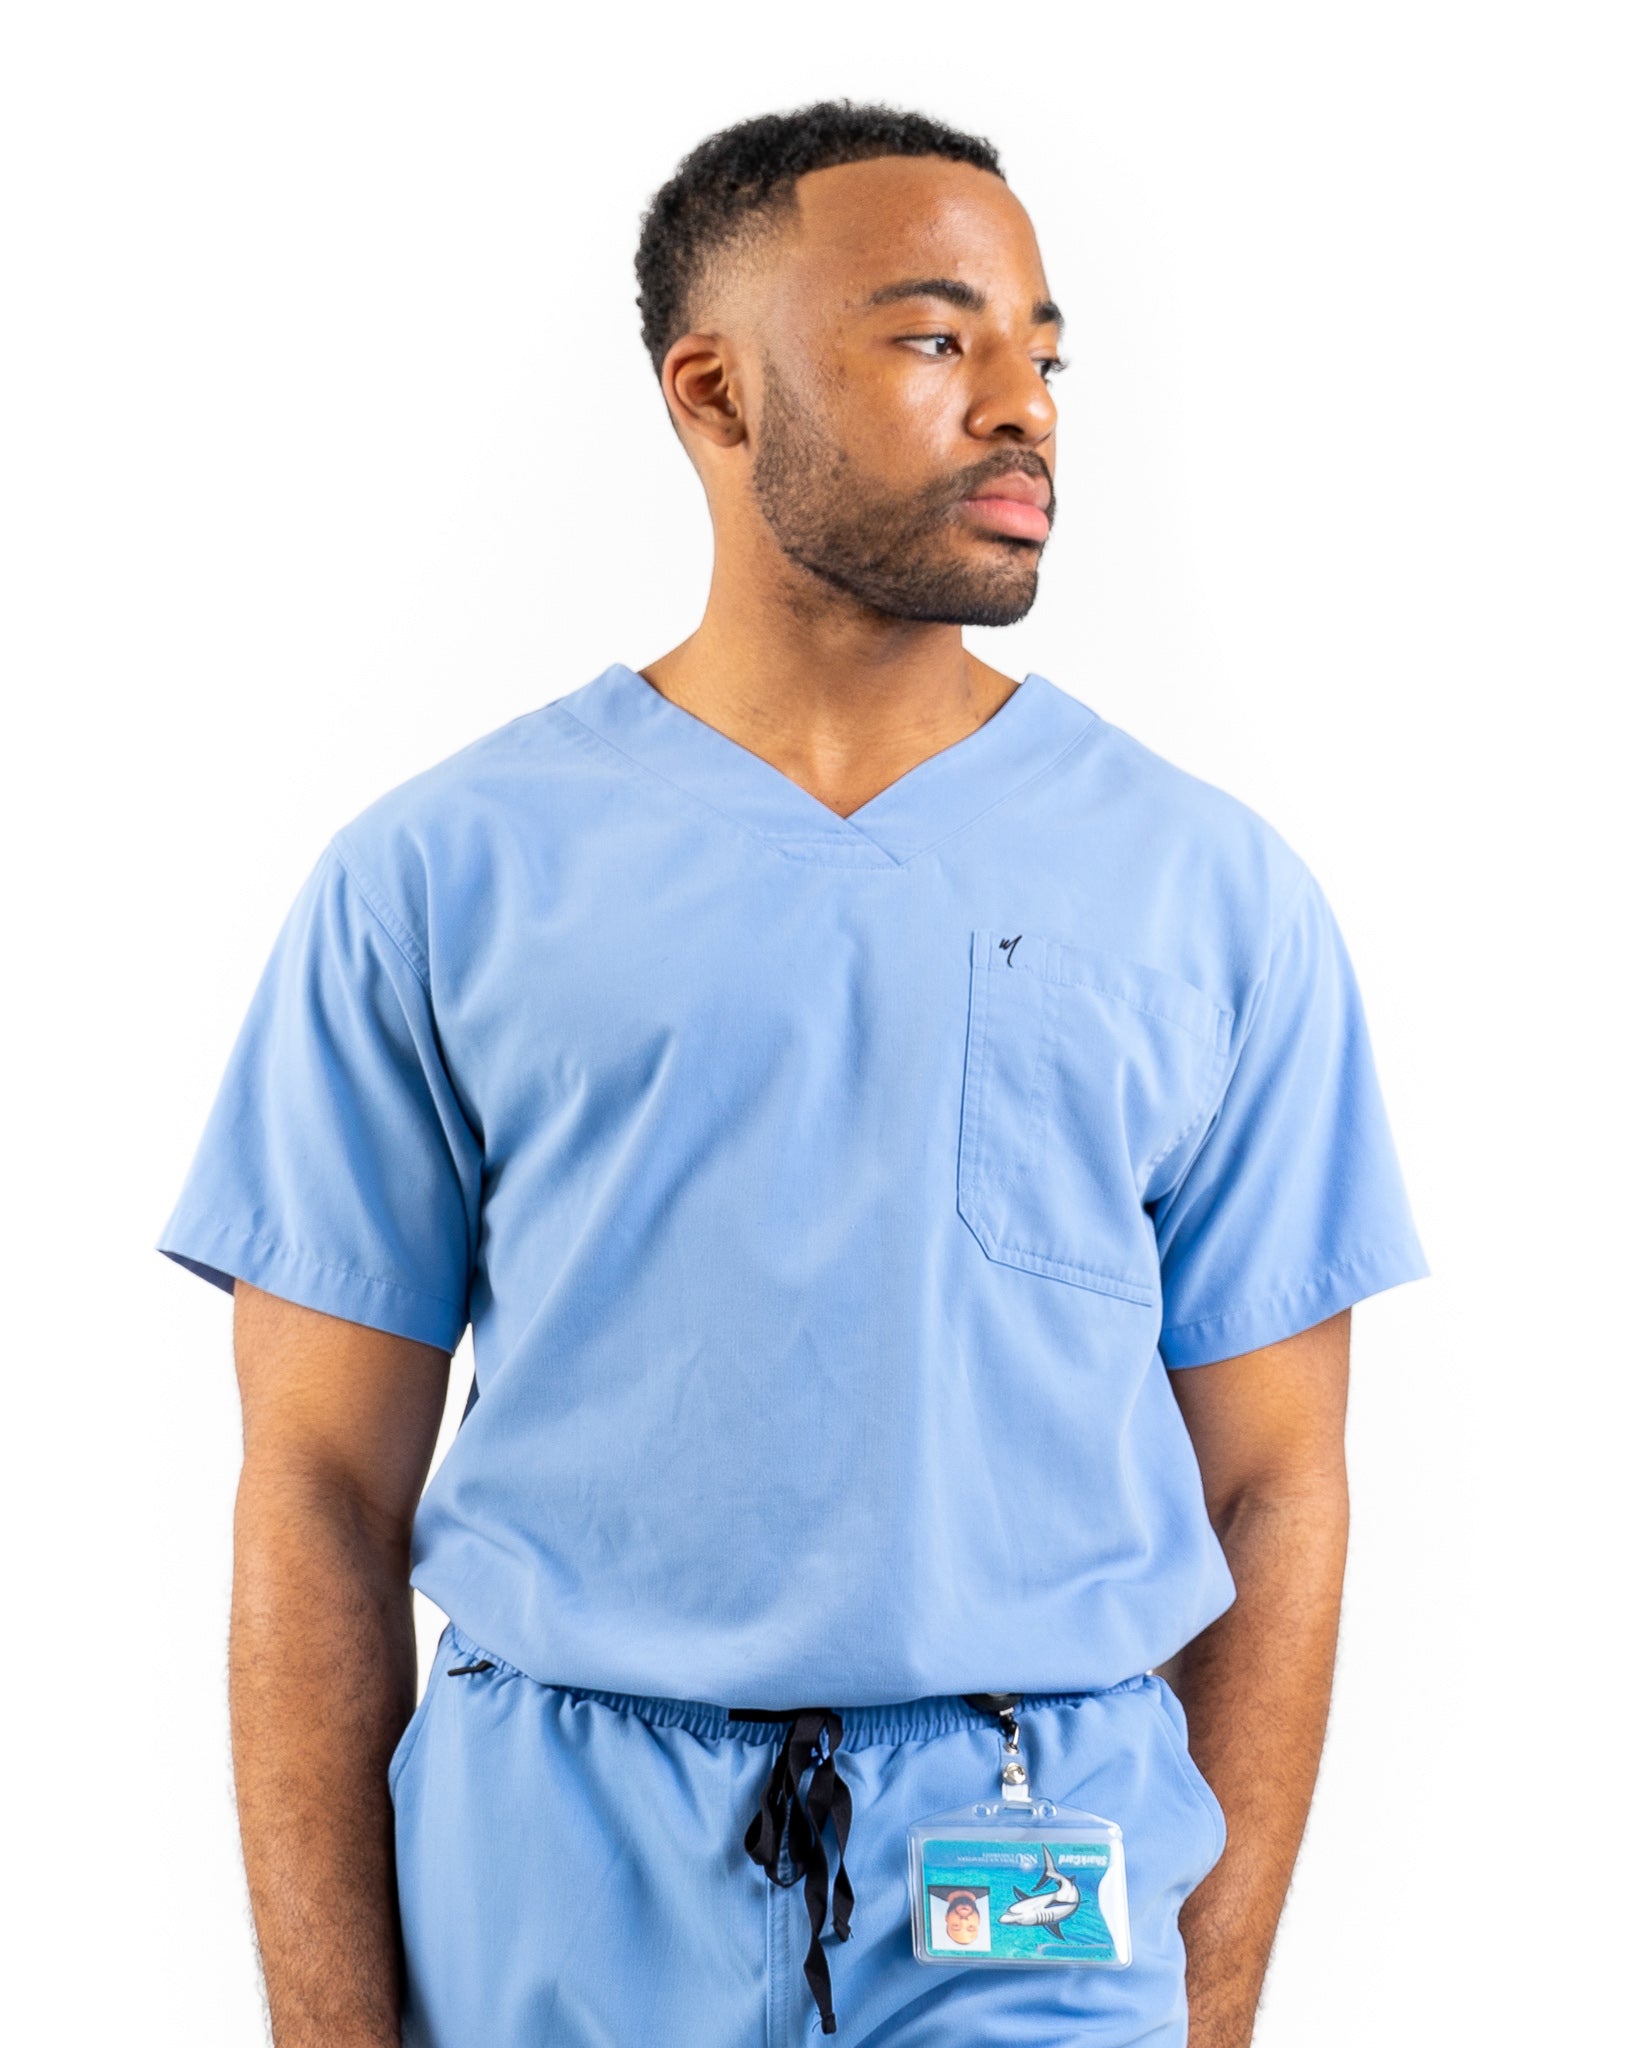 fjols Shuraba føderation Men's Ceil Blue Scrub Top – Mim Scrubs - Millennials In Medicine